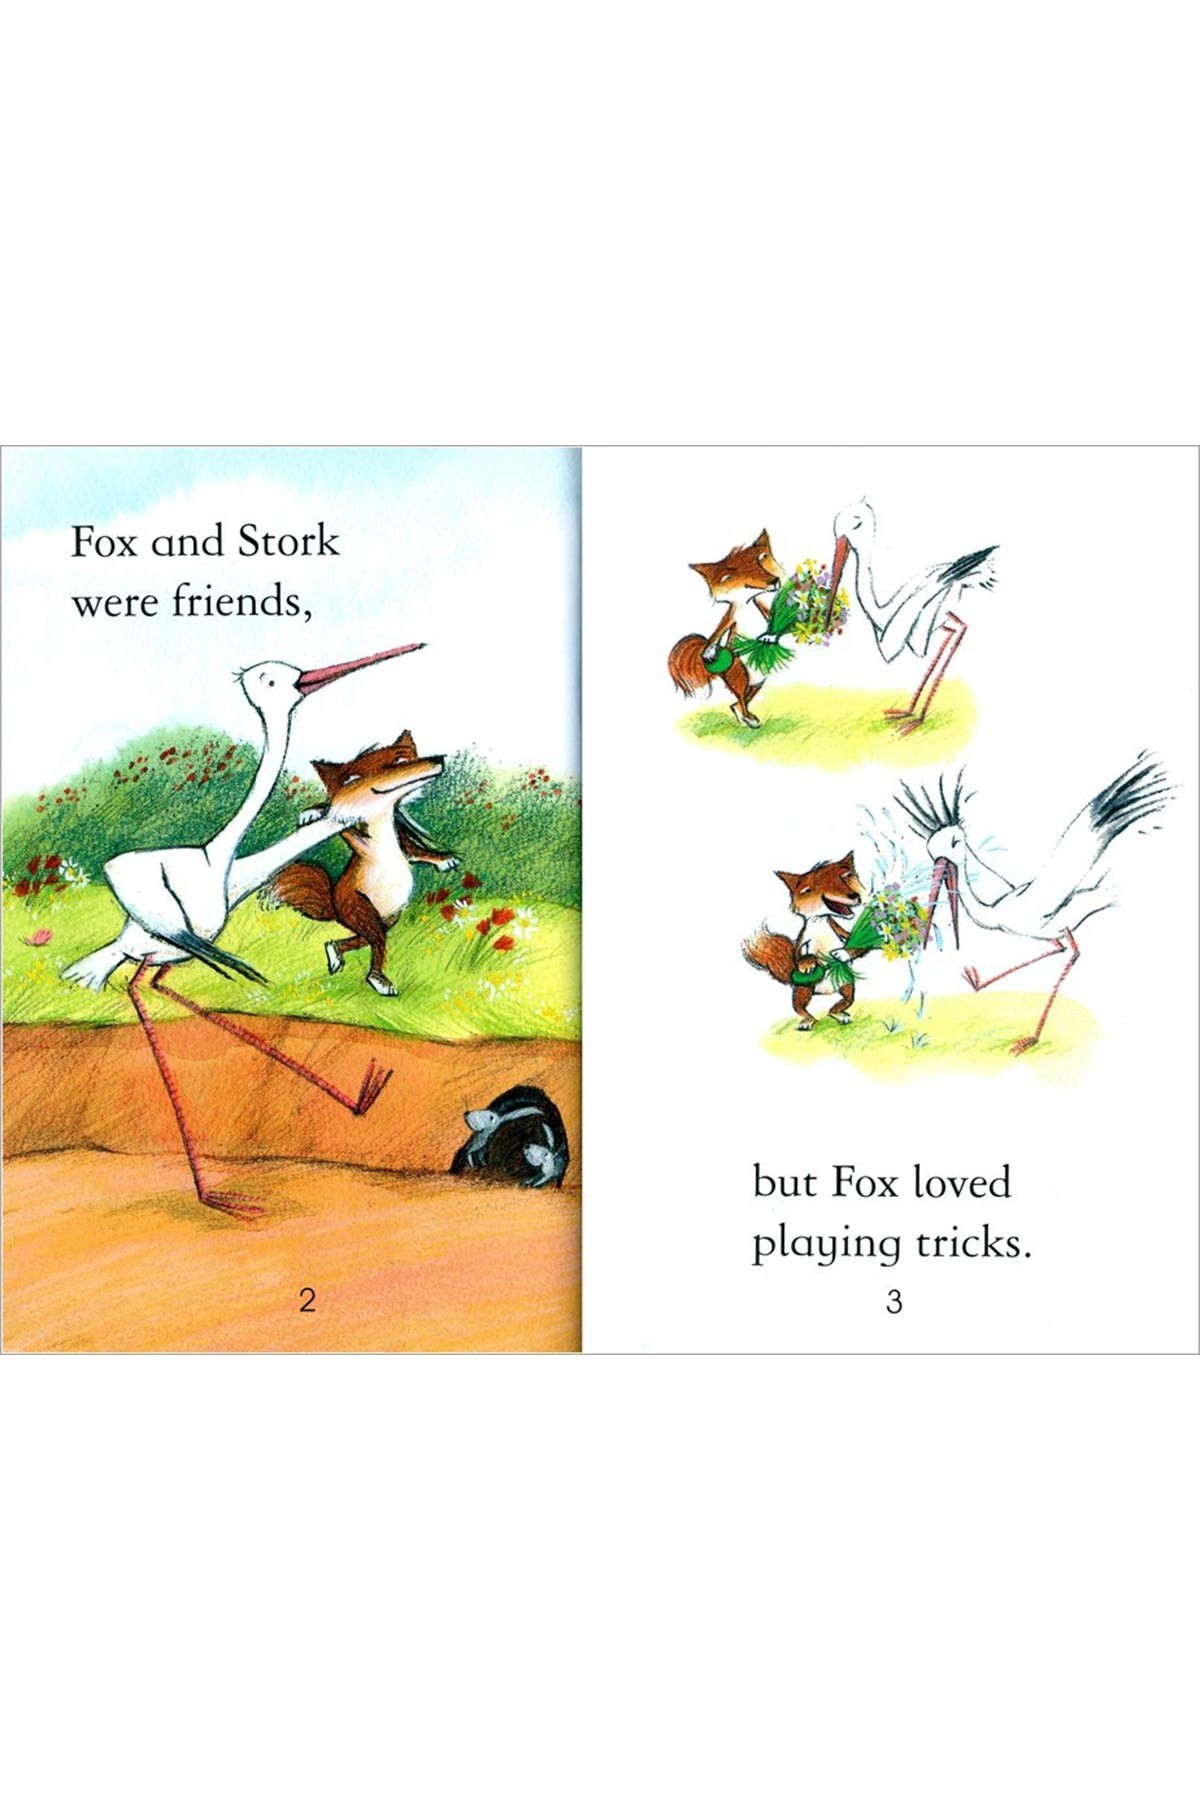 The Usborne FR1: Fox and the Stork